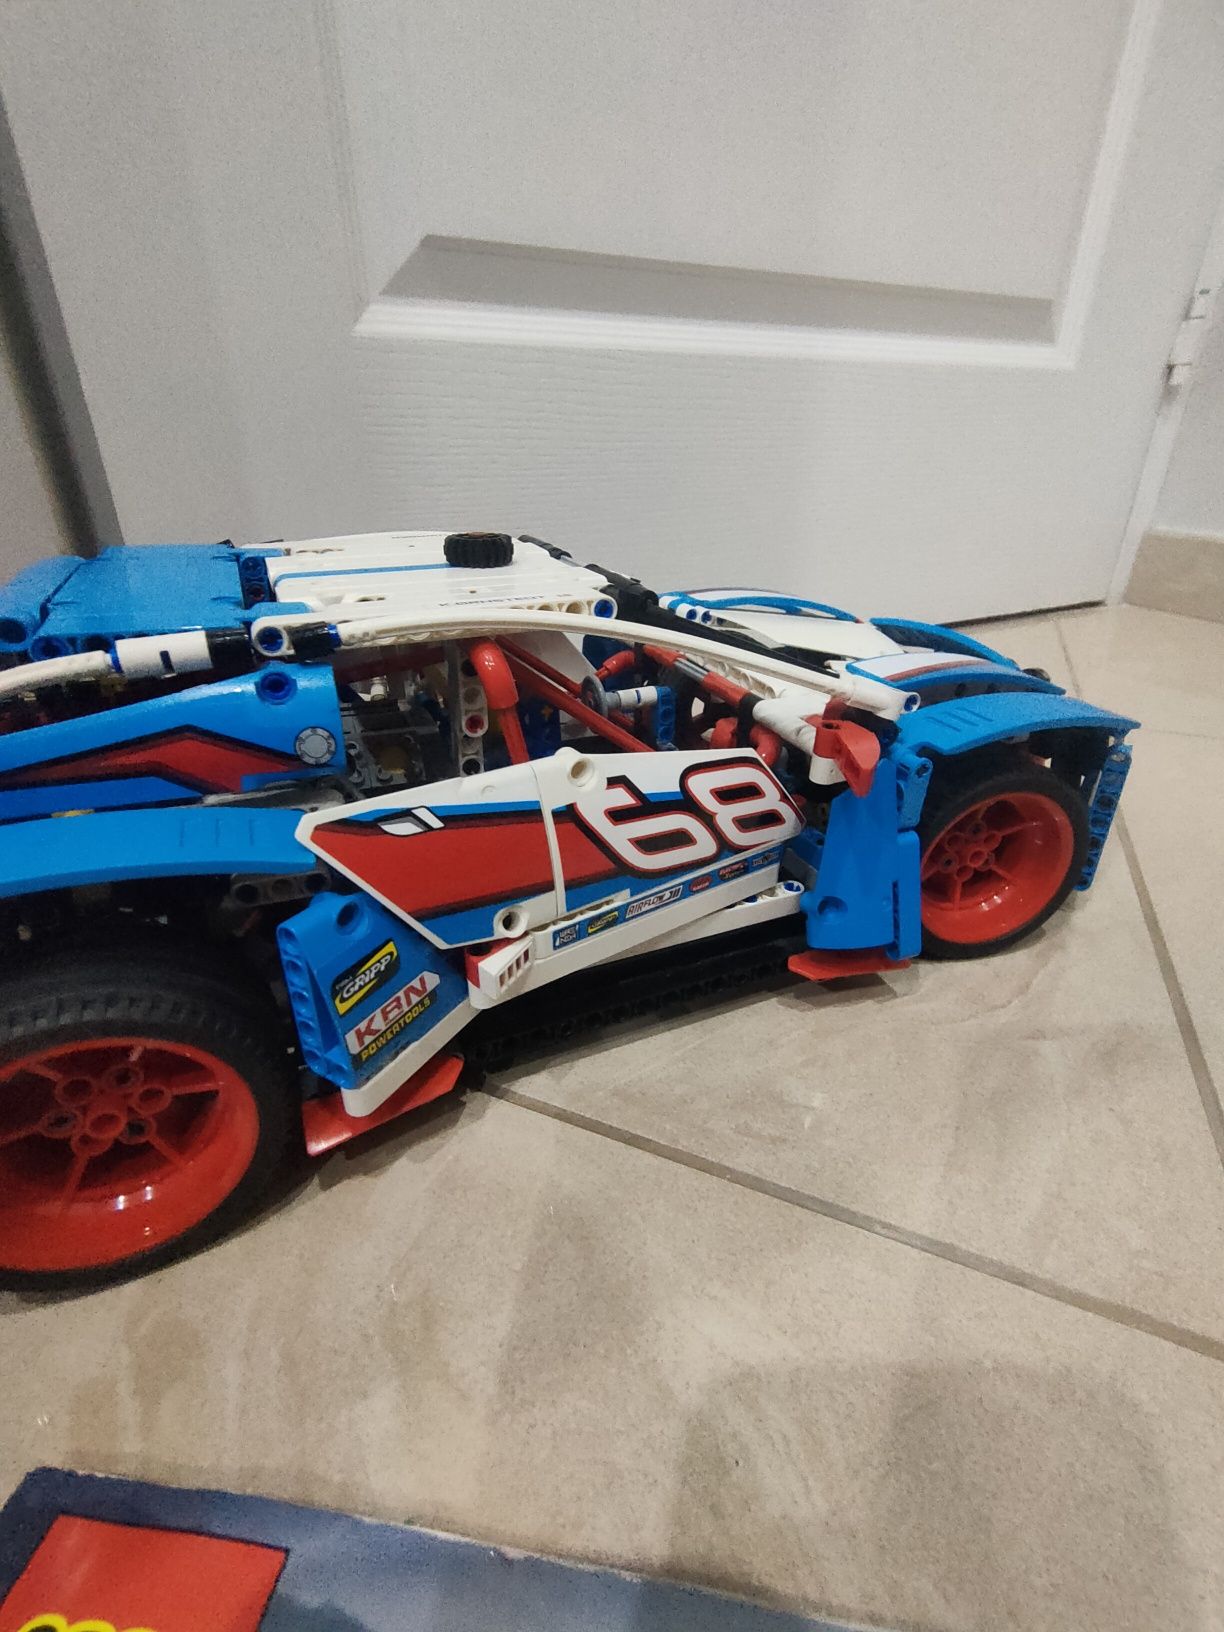 LEGO Technic niebieska wyścigówka 42077